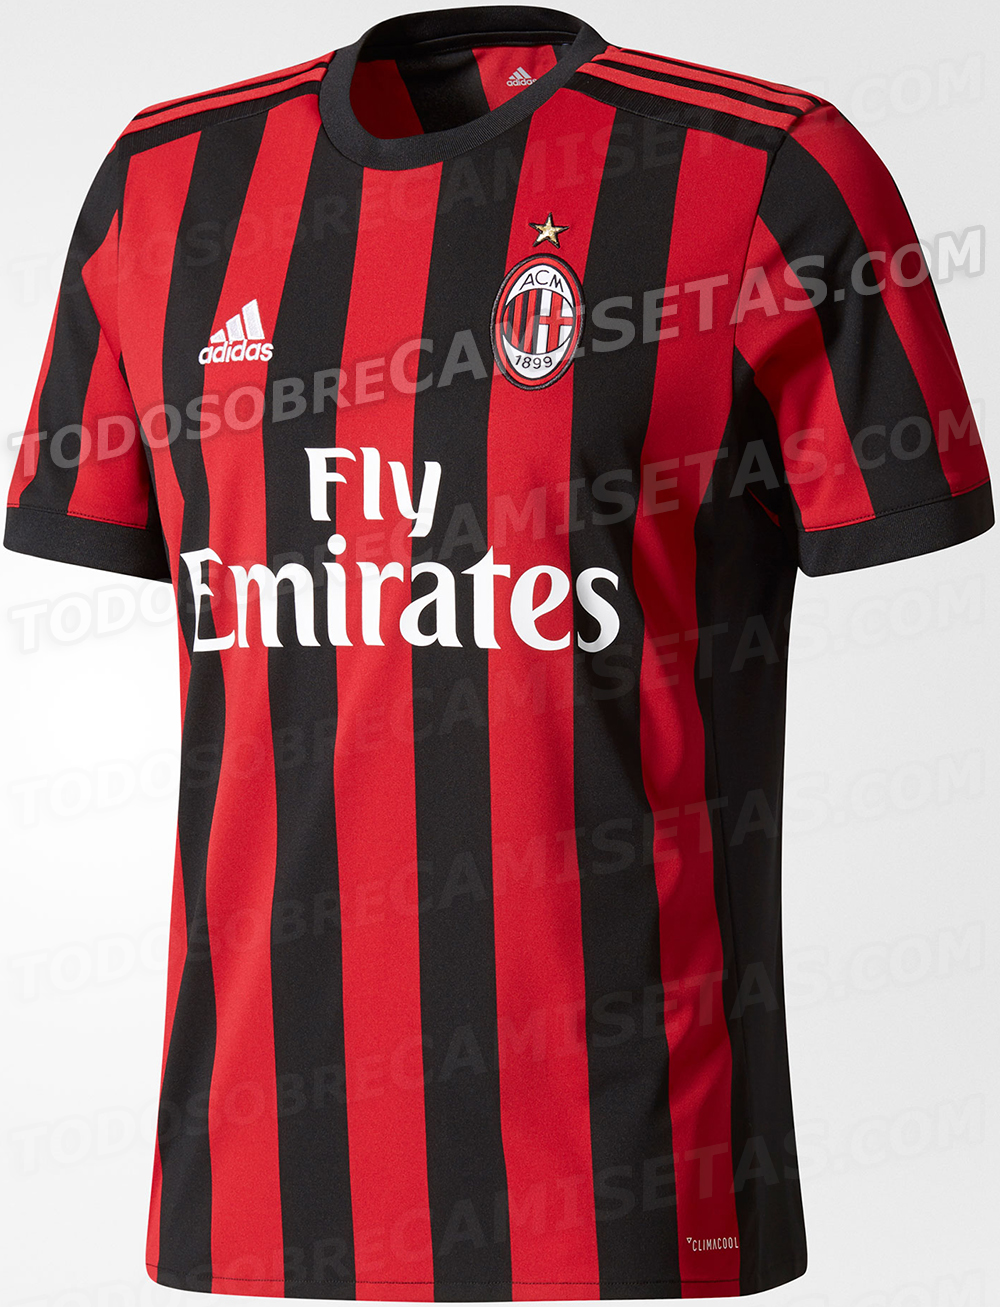 AC Milan 2017-18 adidas home kit